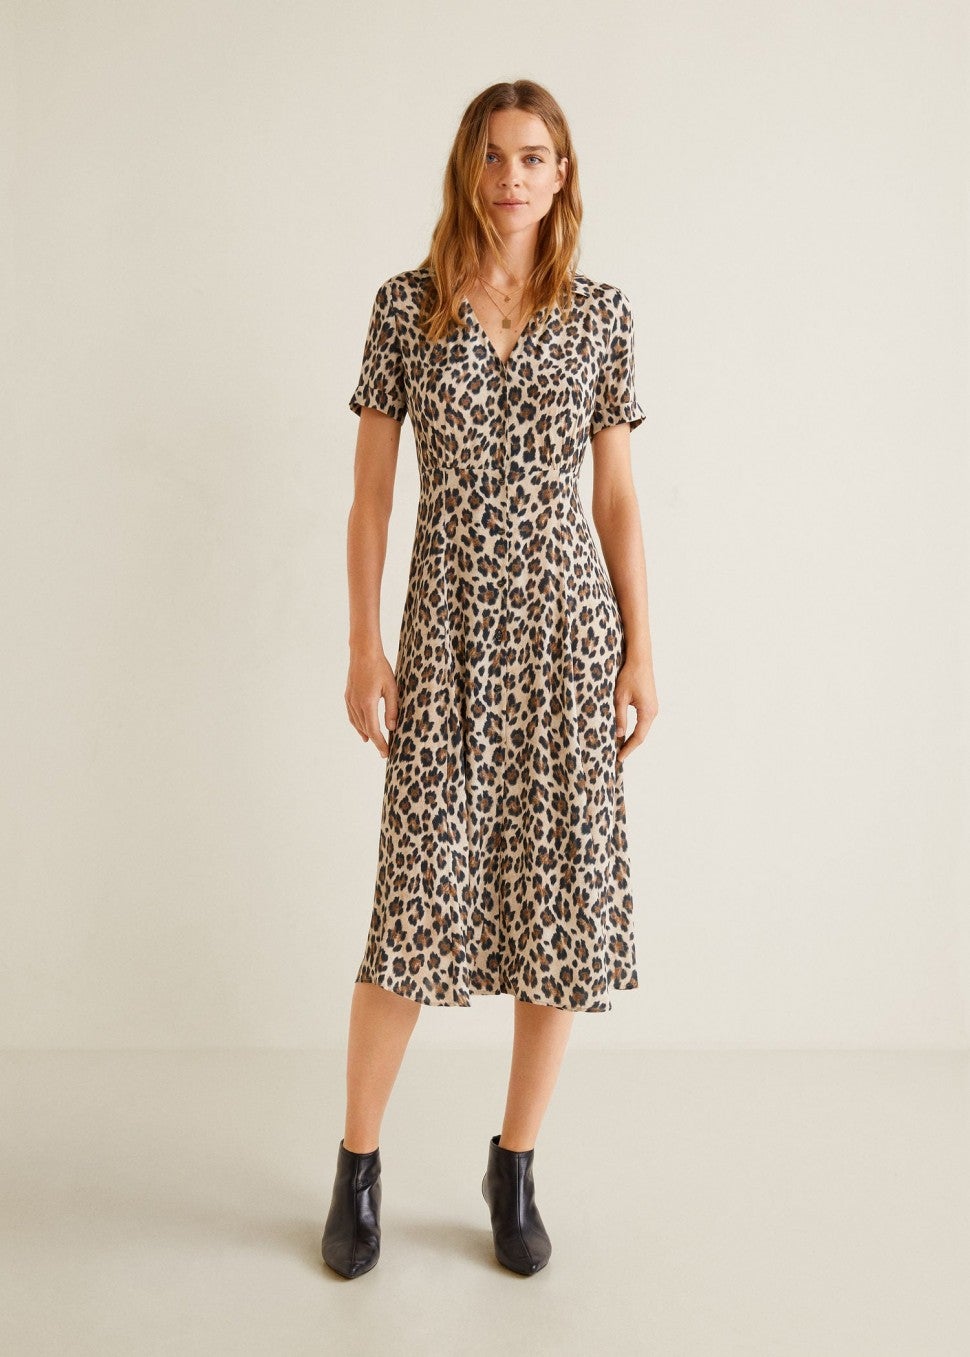 Mango leopard print dress